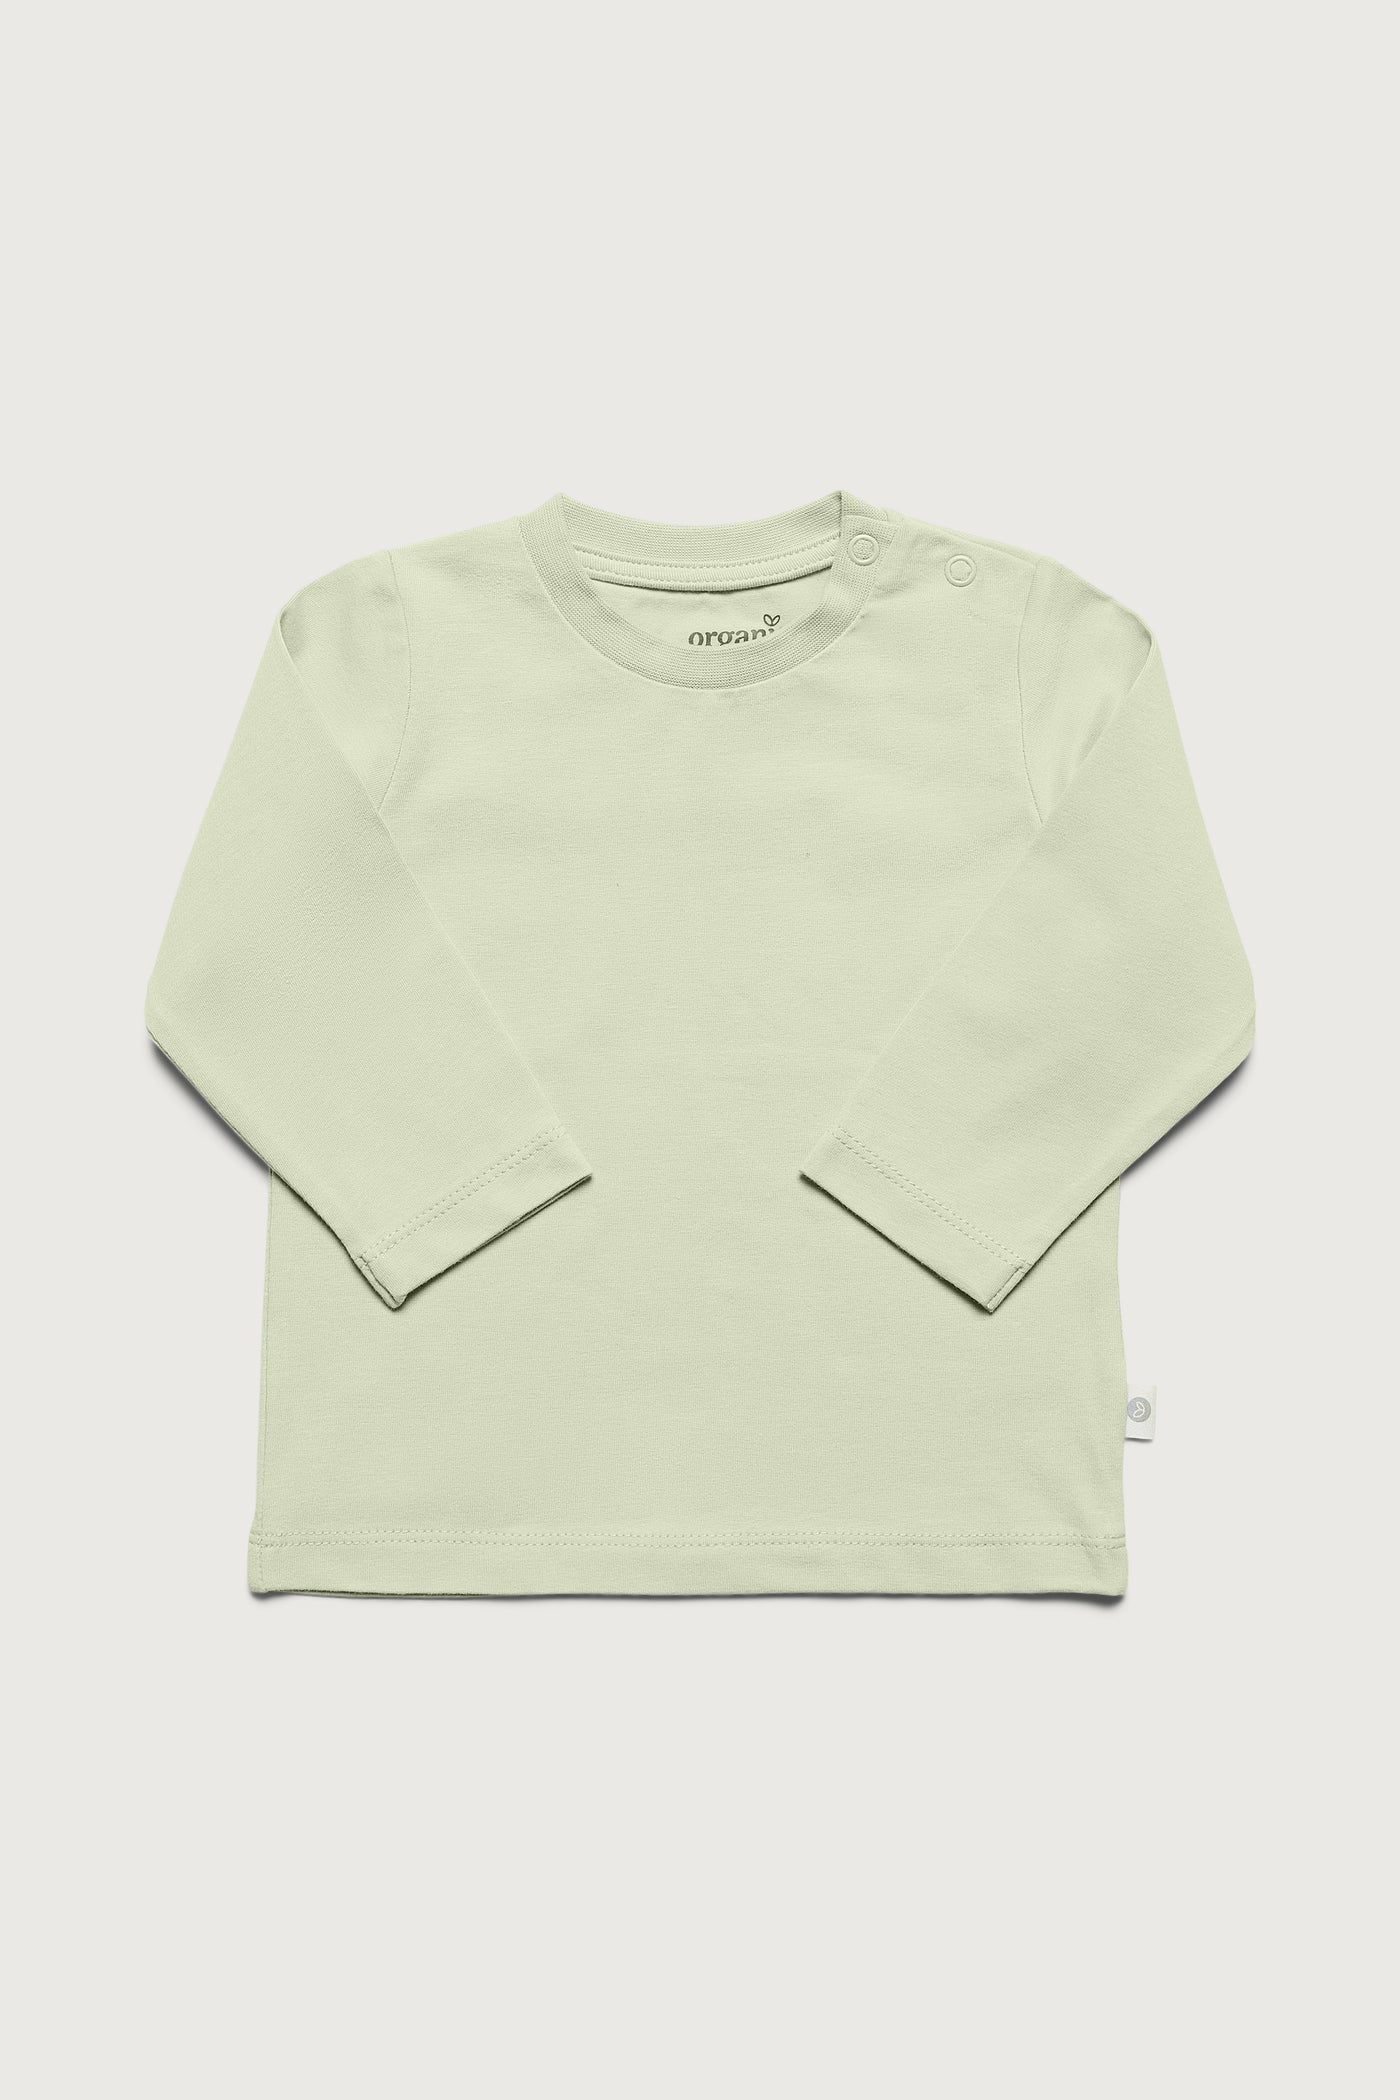 Grøn langærmet super blød T-shirt med masser af stretch i GOTS-certificeret økologisk bomuld fra Organic Lullaby.